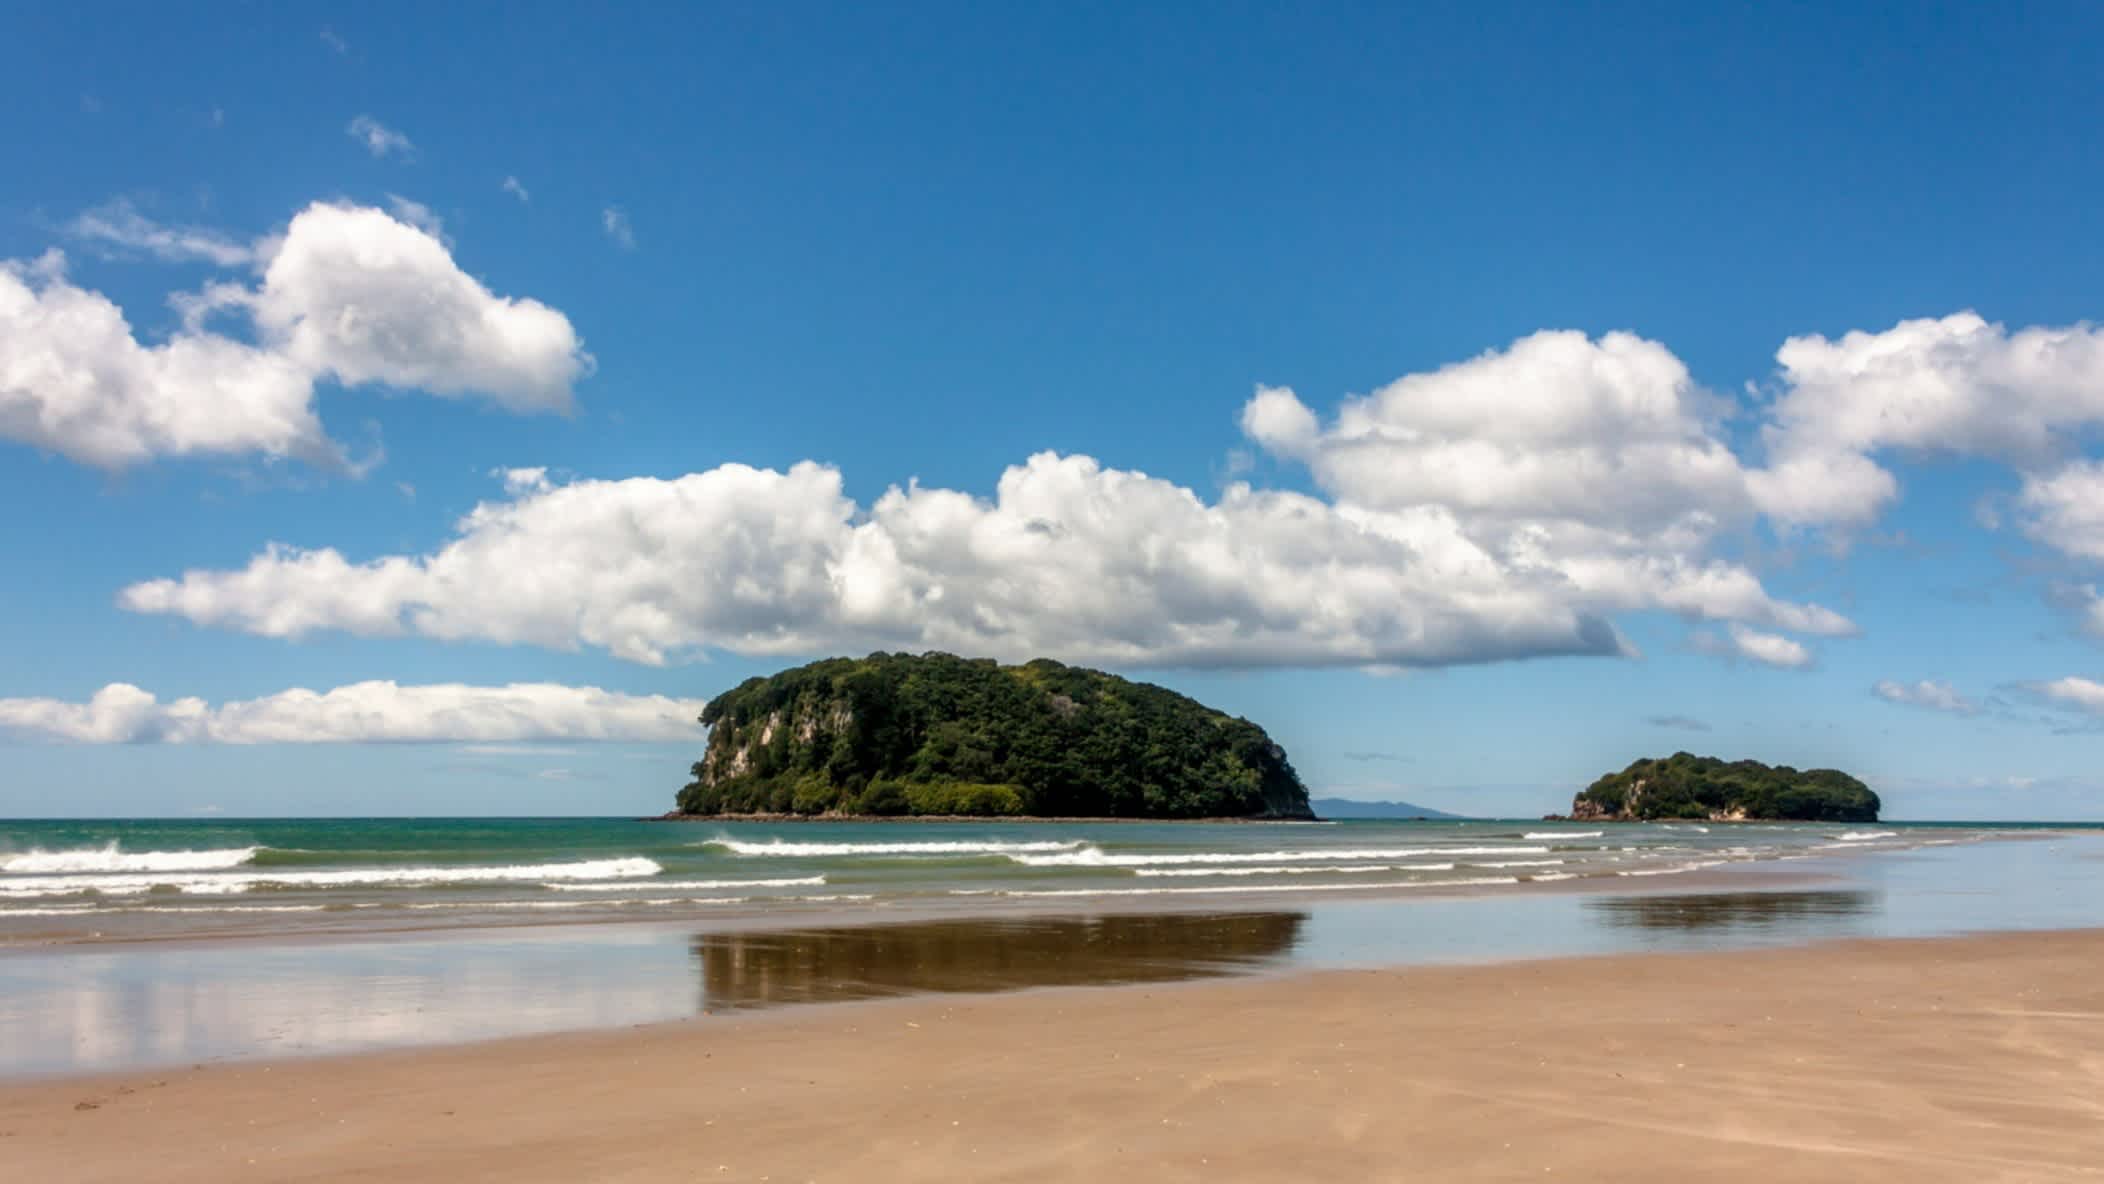 Vue du sable et des vagues de la plage de Whangamata, île du Nord, Nouvelle-Zélande avec en arrière plan des rochers verdoyants

